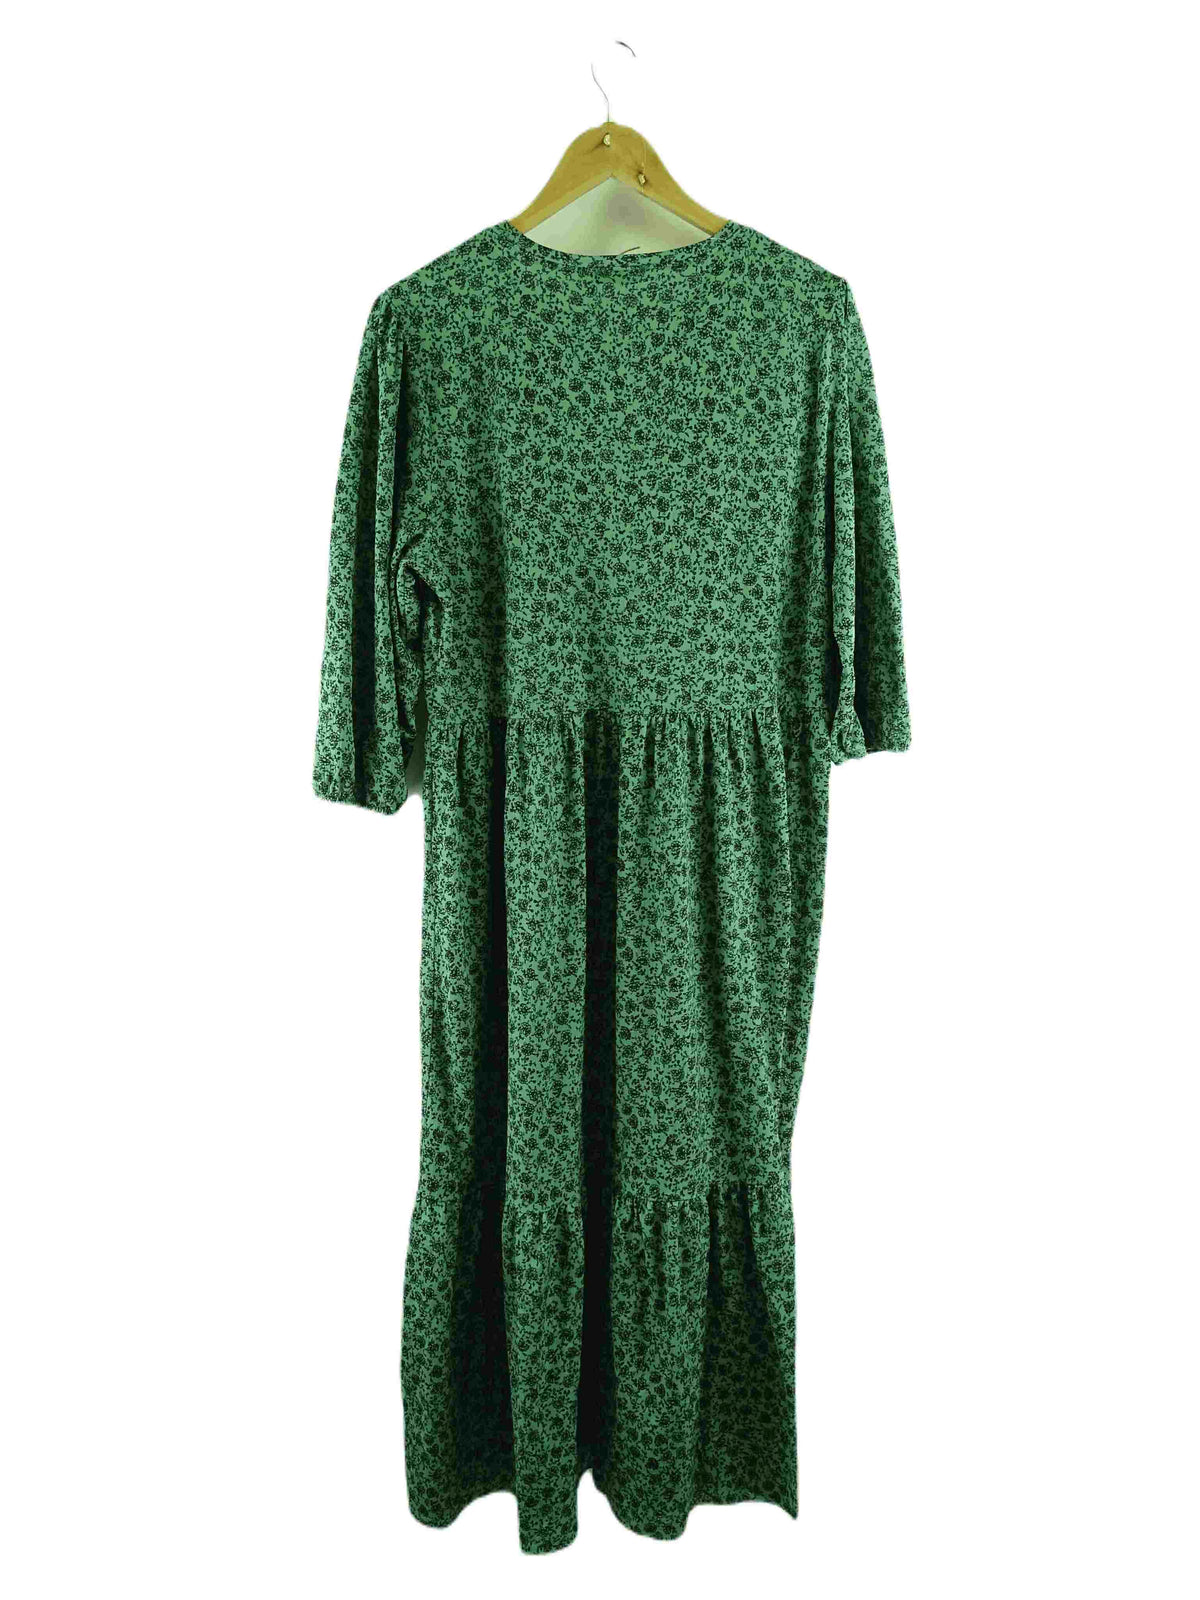 Zara Green Dress L